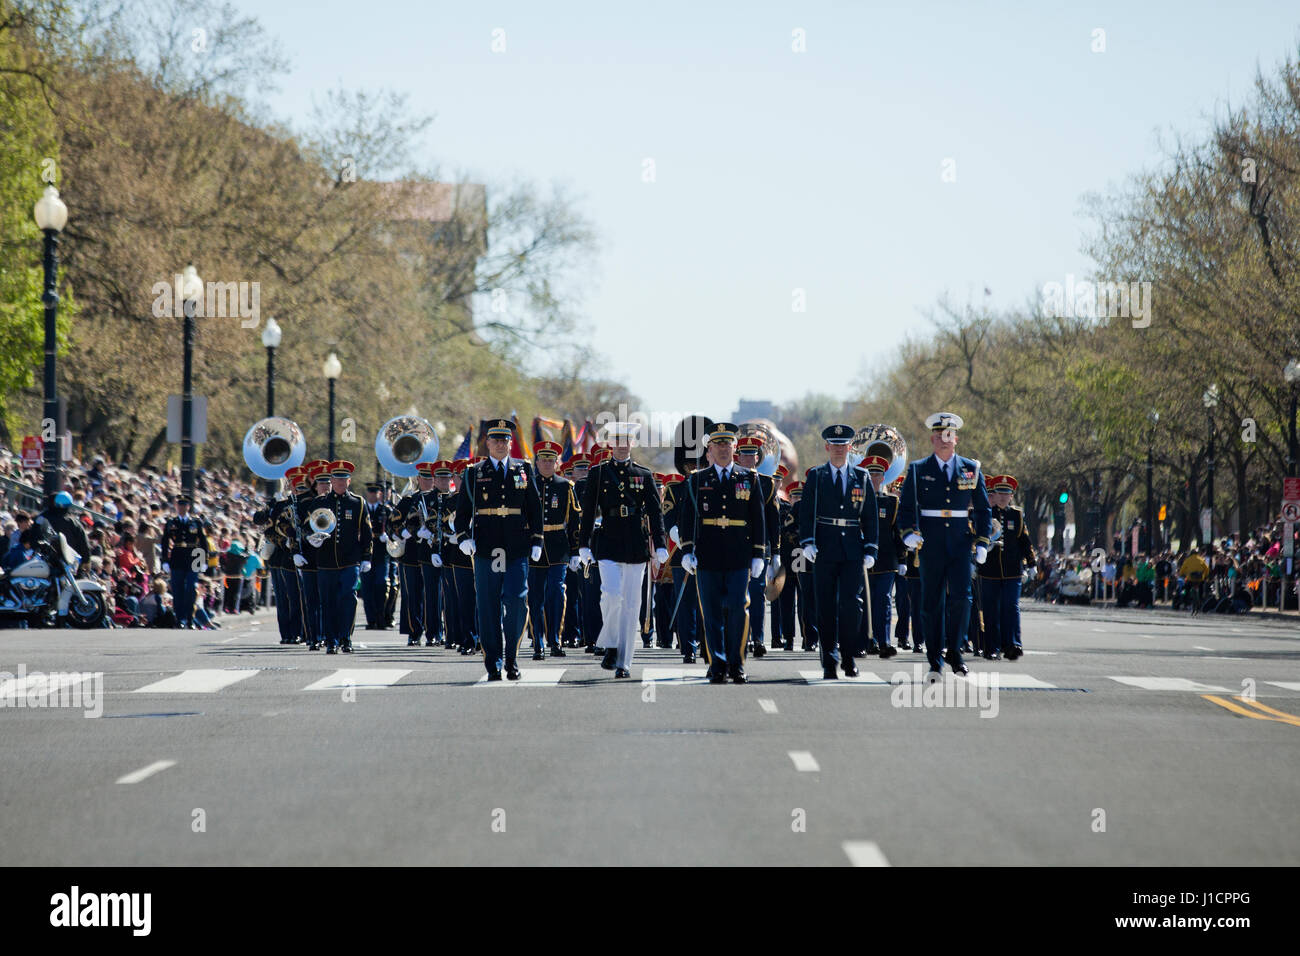 La banda del ejército de los Estados Unidos participaron en un desfile de la calle - Washington, DC, EE.UU. Foto de stock